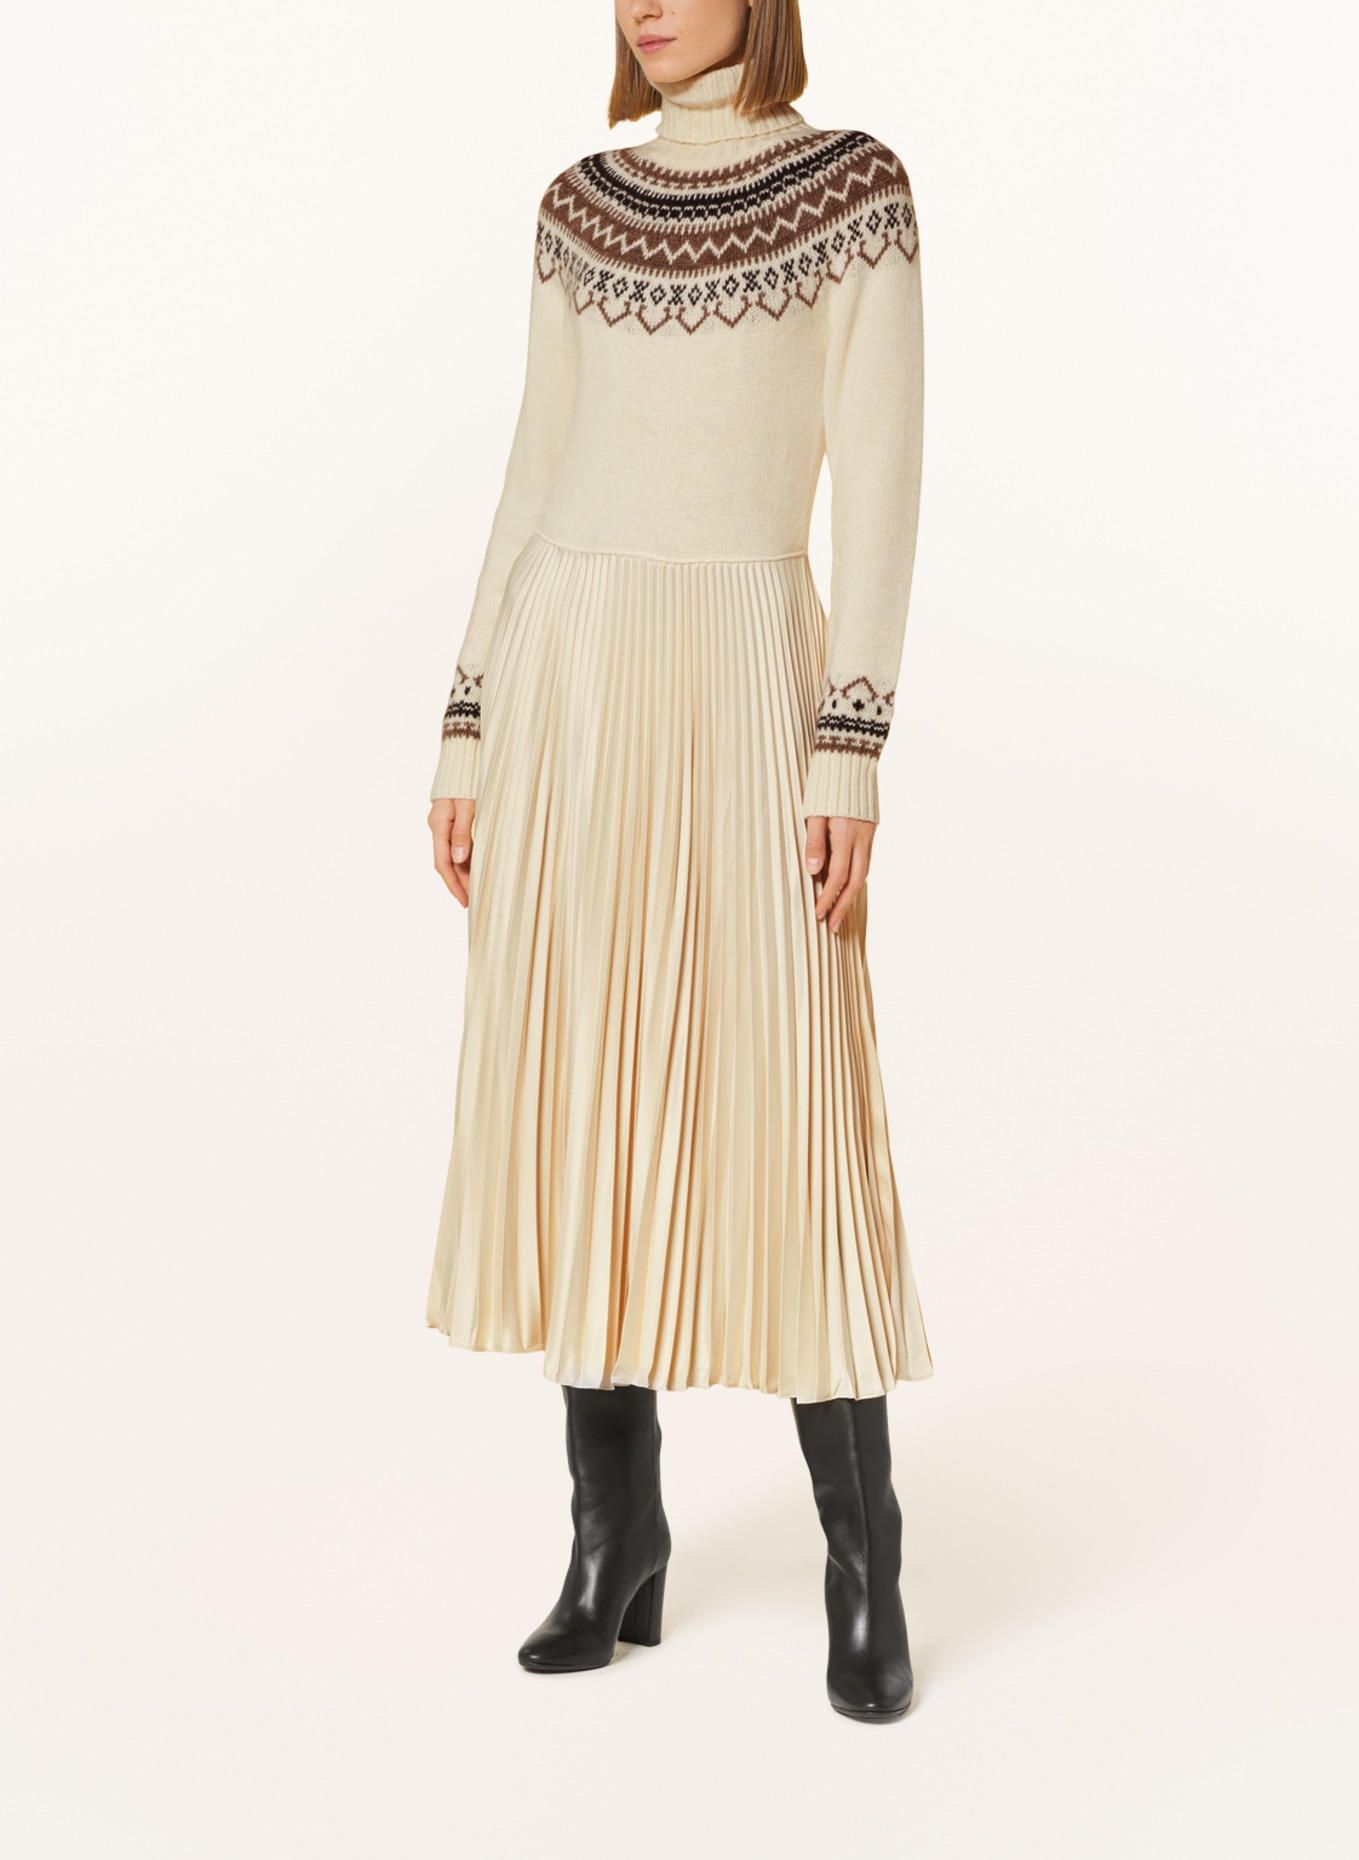 POLO RALPH LAUREN Dress in mixed materials with pleats, Color: ECRU/ BEIGE/ DARK BROWN (Image 2)